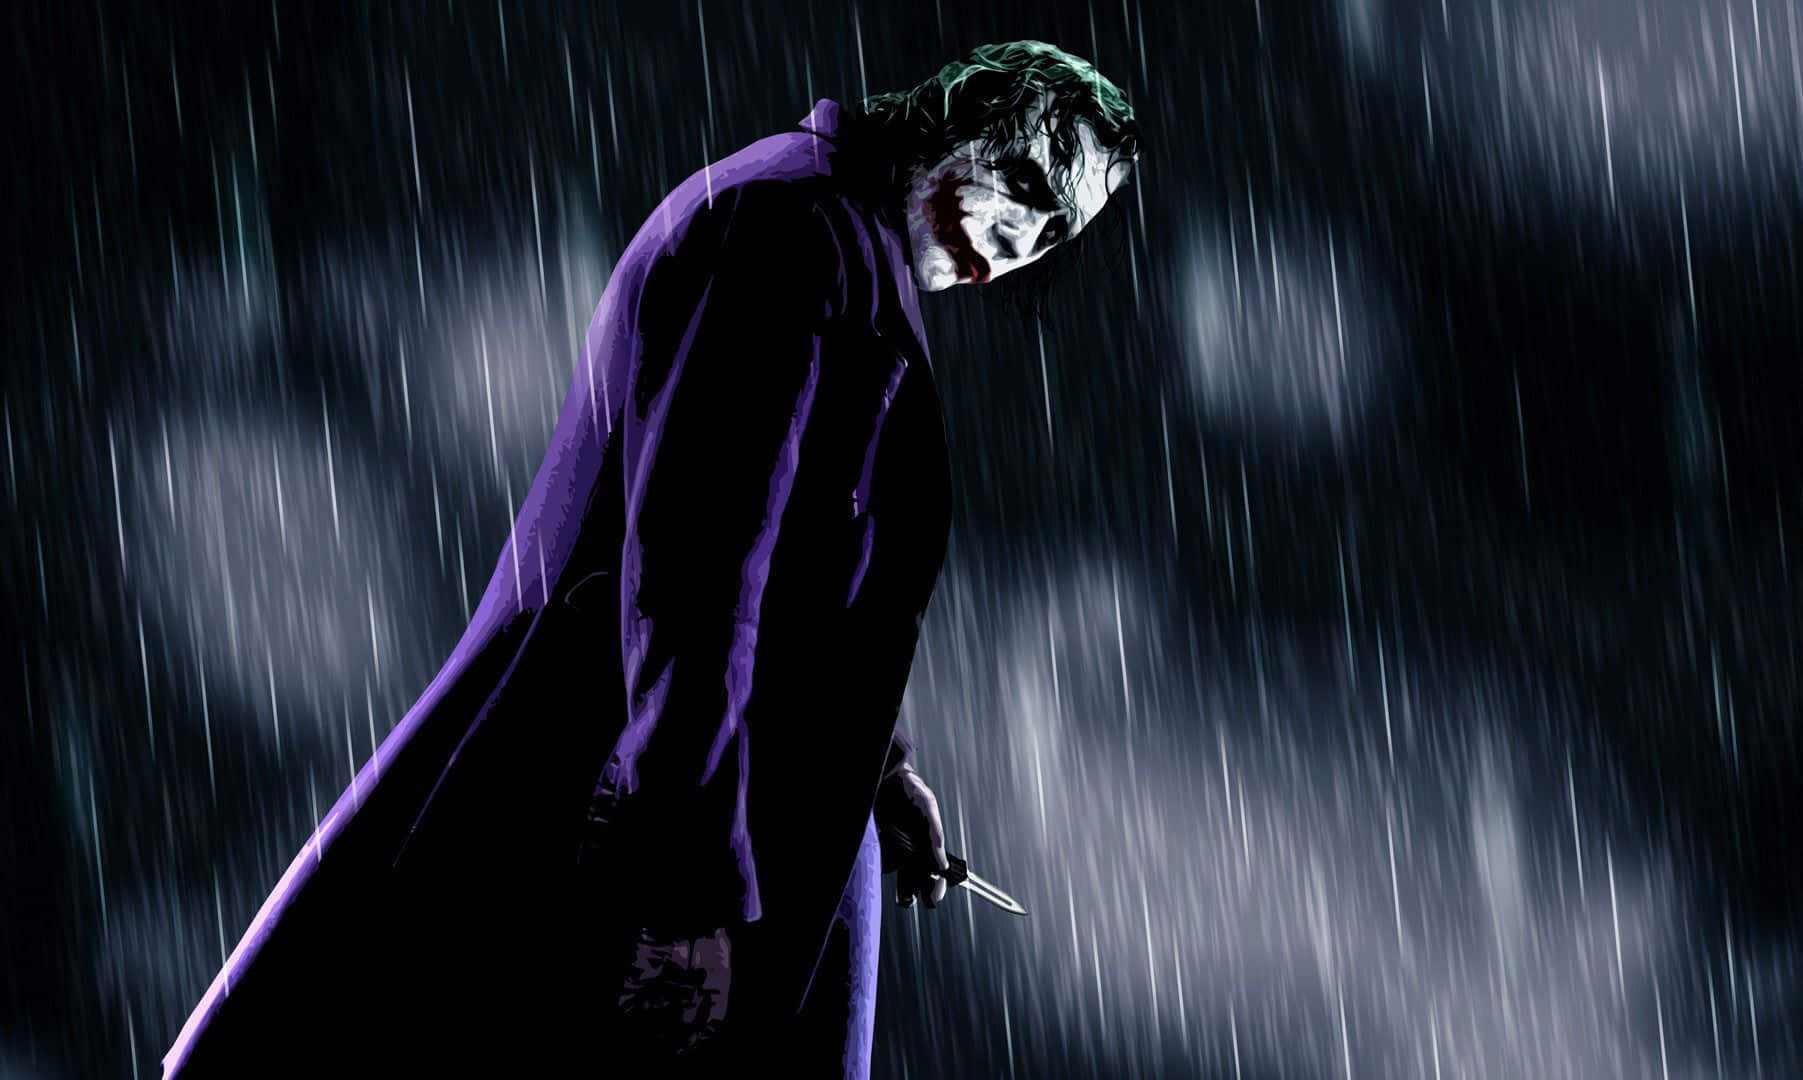 Lamaliciosa Sonrisa Del Joker: Una Impactante Representación Artística Del Villano Más Infame De Gotham. Fondo de pantalla